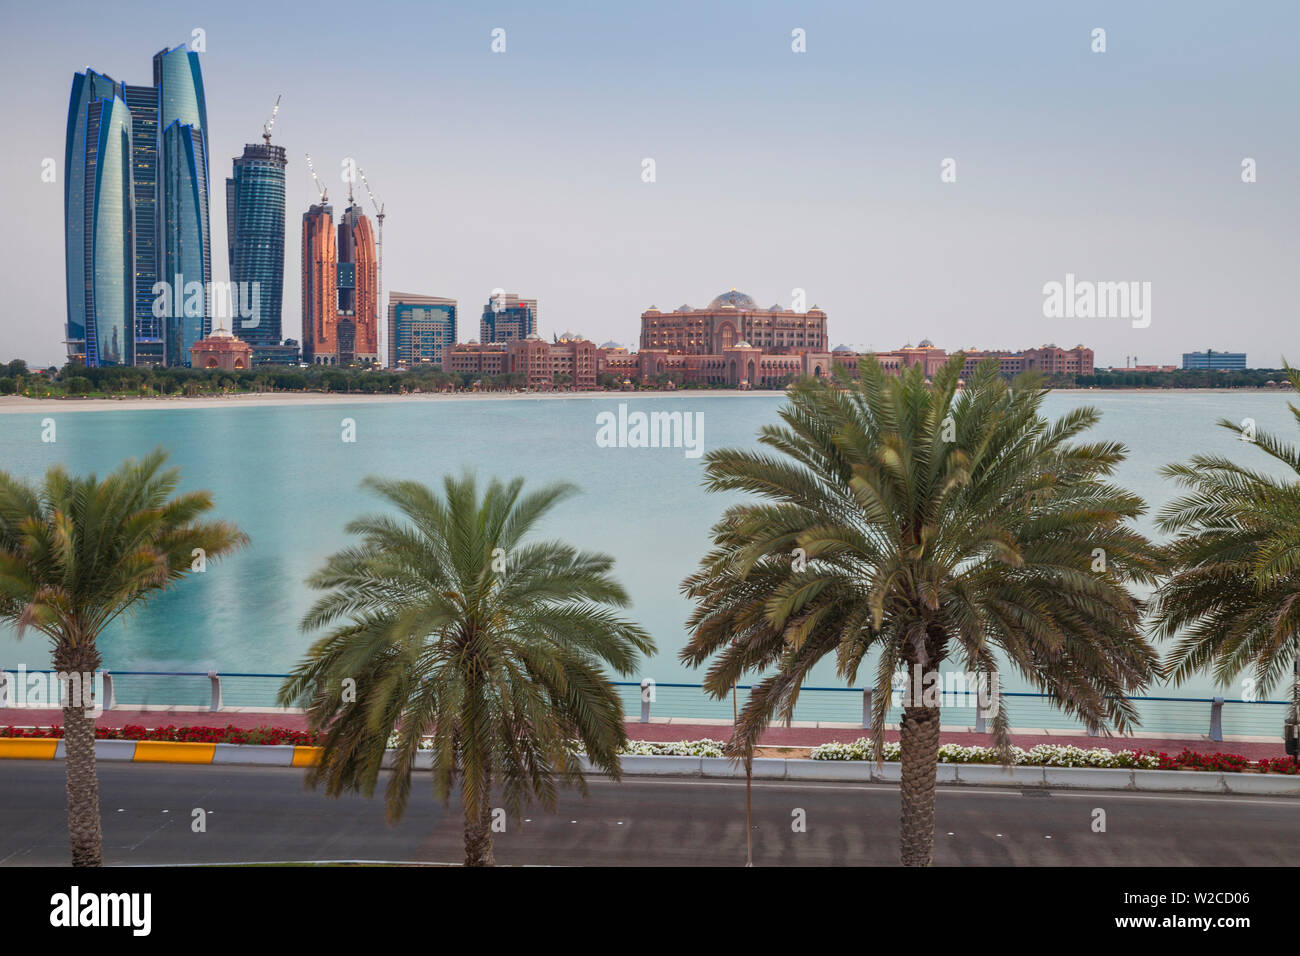 Emirats arabes unis, Abu Dhabi, vue sur la ville à l'égard Etihad Towers, le Royal Rose Hotel et l'Emirates Palace Hotel Banque D'Images